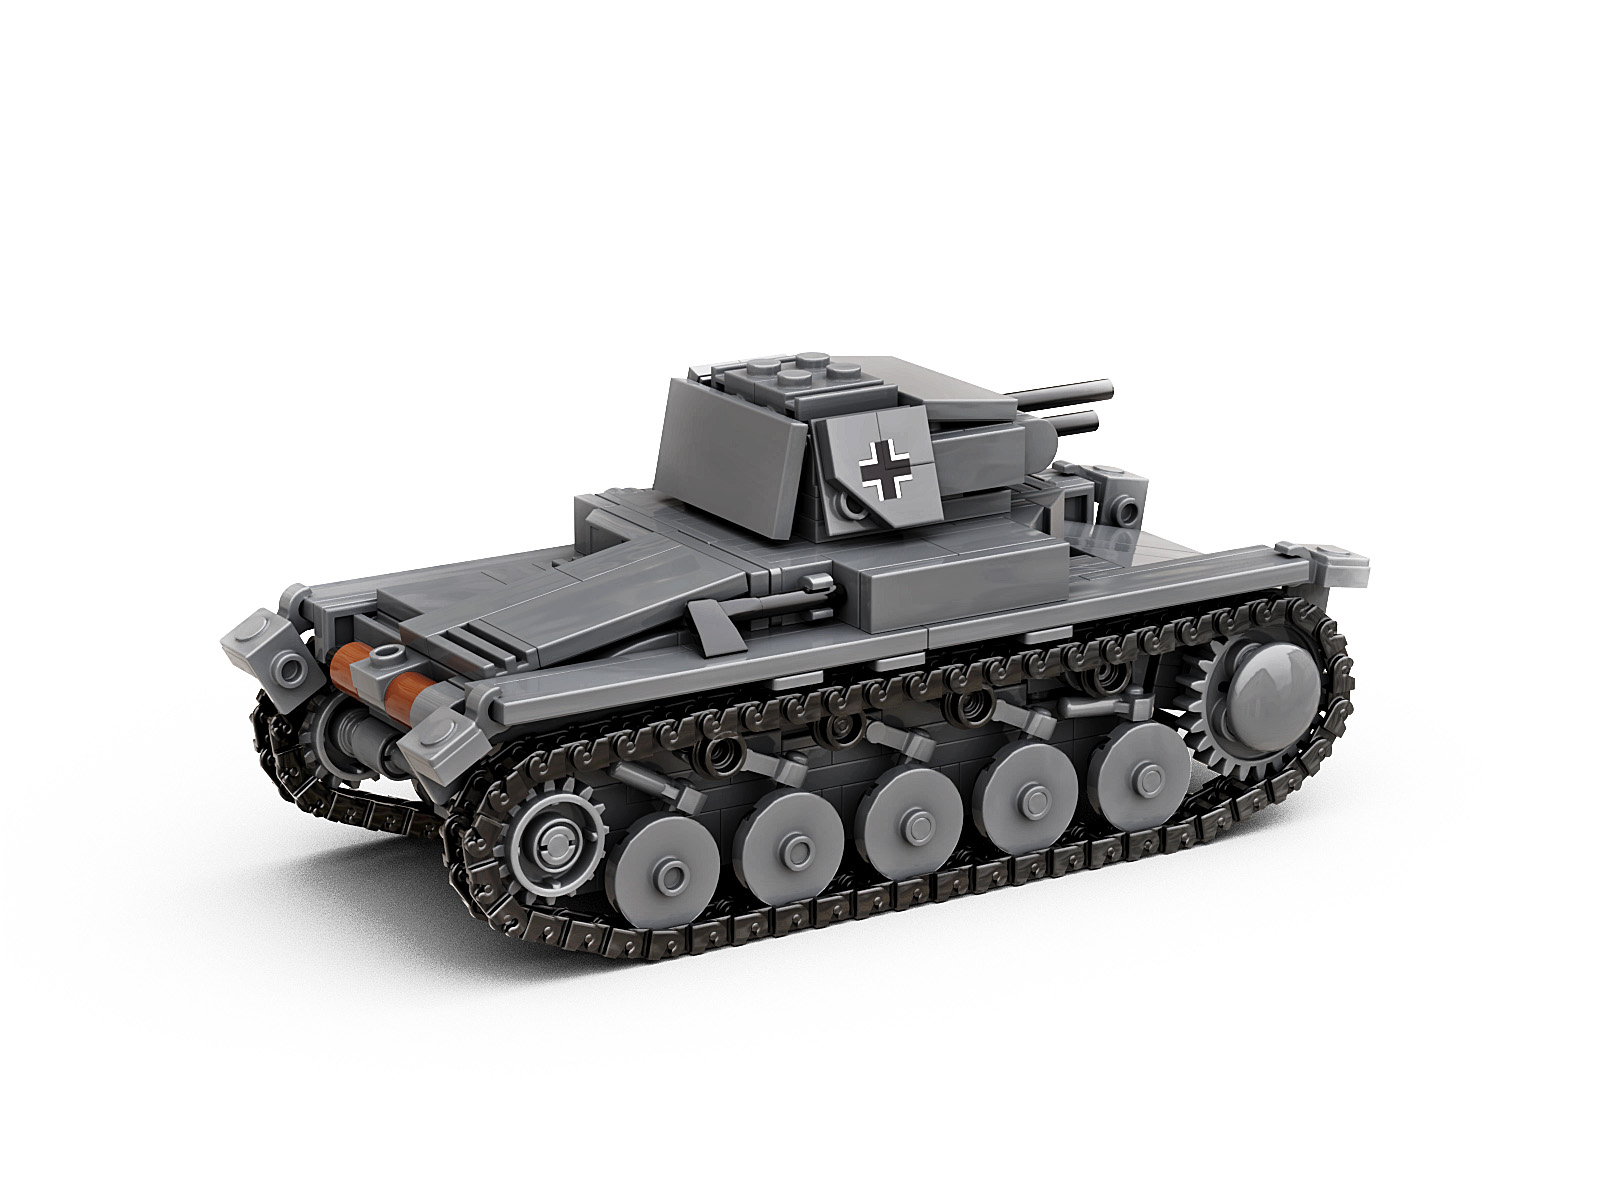 WW2 Tank Panzer 2 - Military Shop